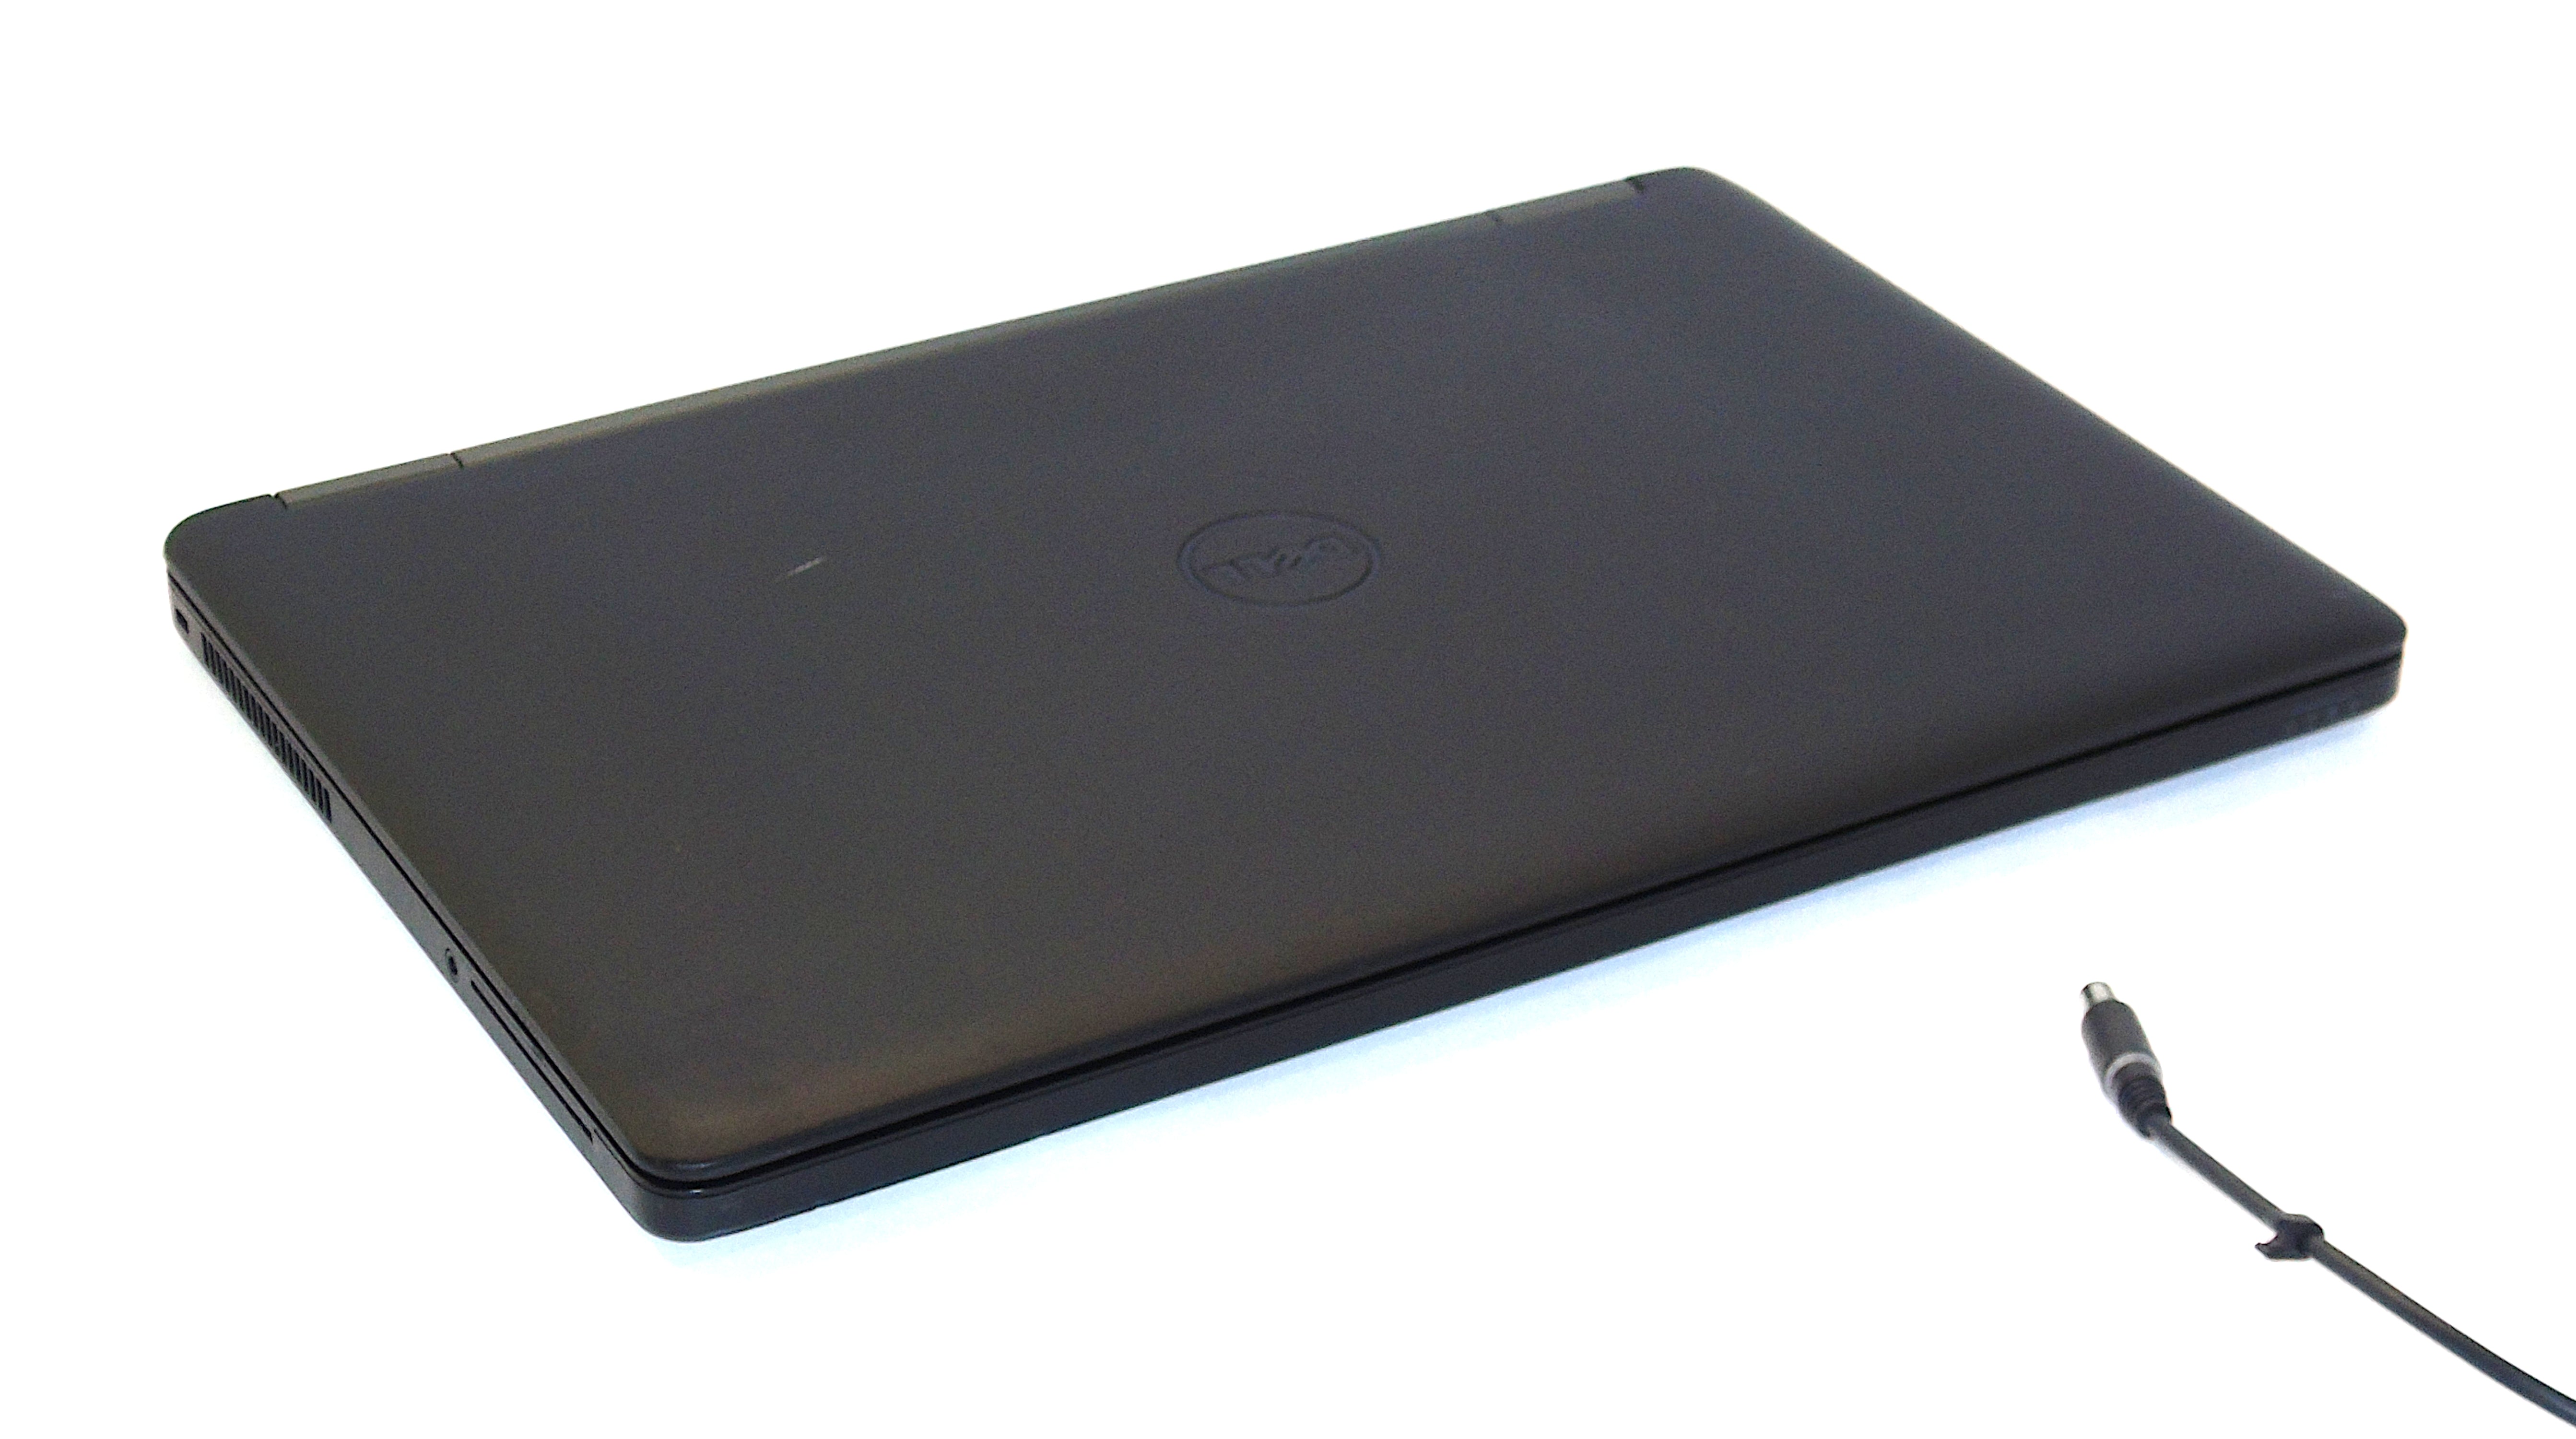 Dell Latitude E5550 Laptop, 15.5" i7 5th Gen, 8GB RAM, 256GB SSD, Windows 11